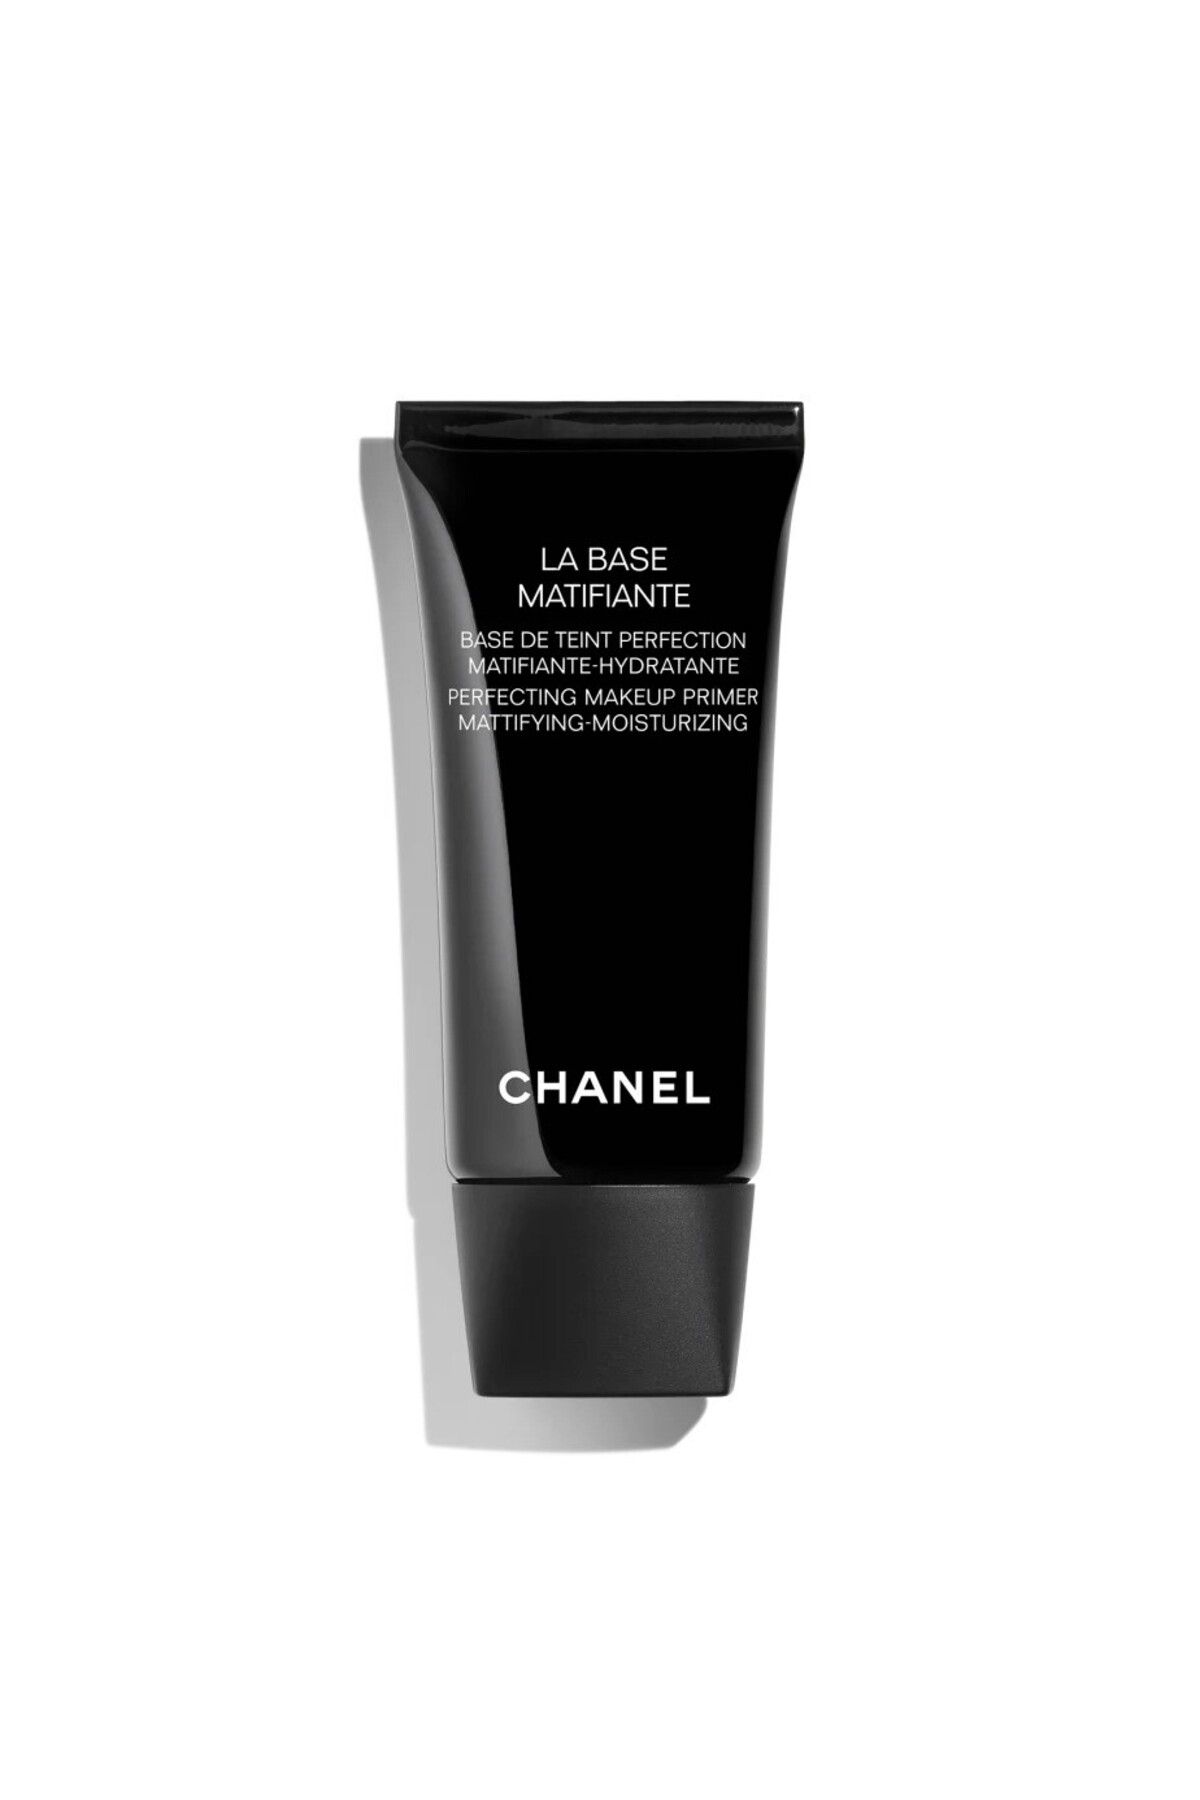 Chanel LA BASE MATIFIANTE - MÜKEMMELLEŞTİRİCİ MAKYAJ BAZI MATLAŞTIRICI - NEMLENDİRİCİ